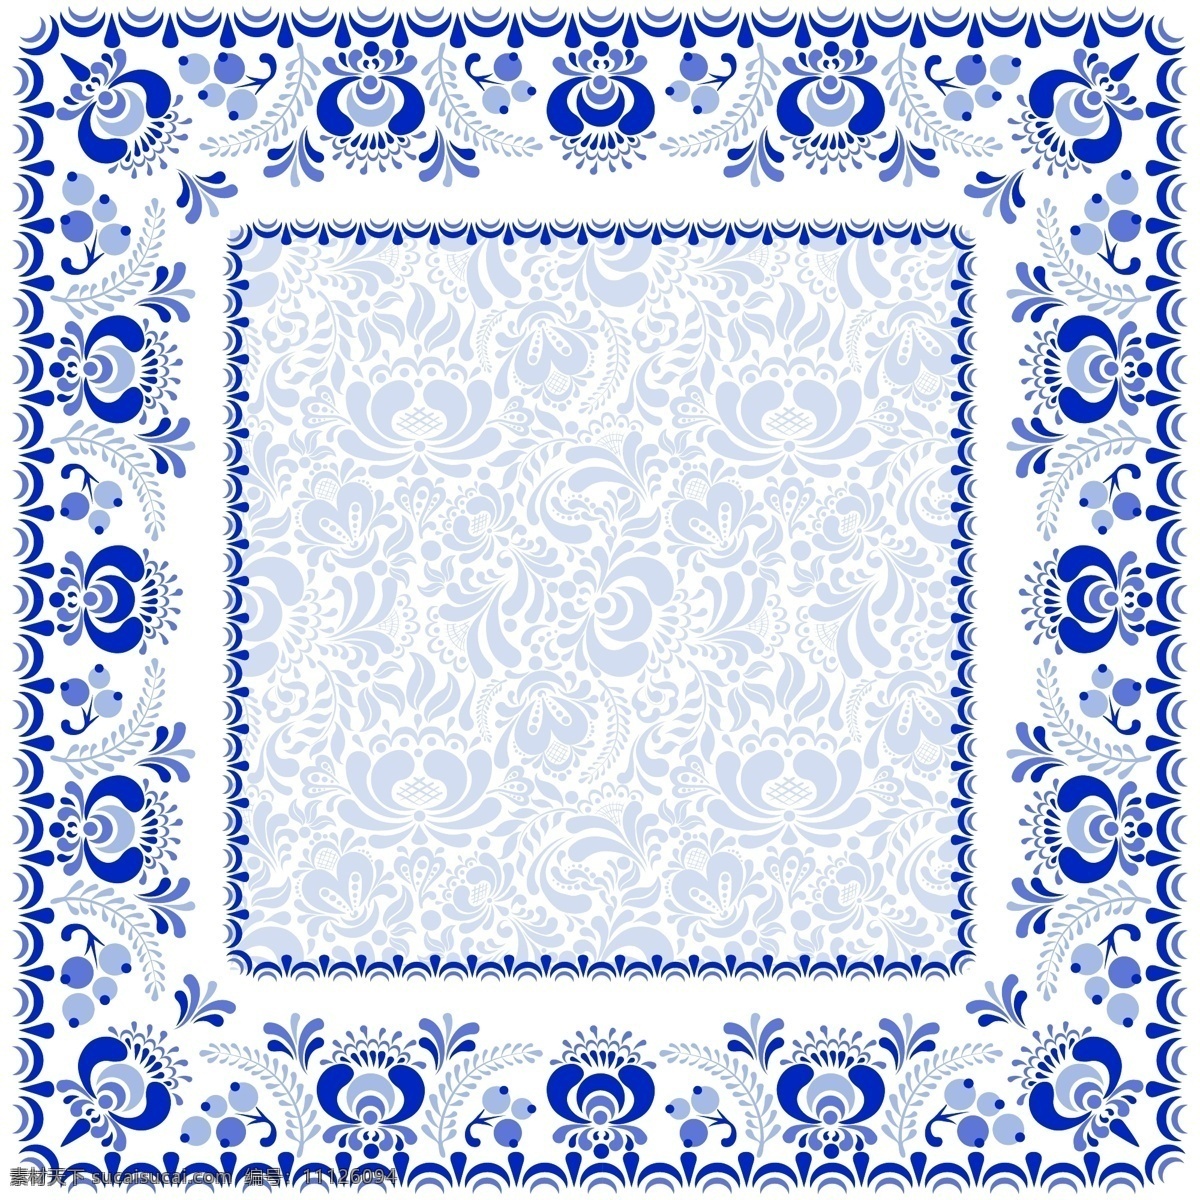 方形 蓝色 花纹 青 餐具 餐盘 古风 花朵 印花 青花瓷 插画 矢量